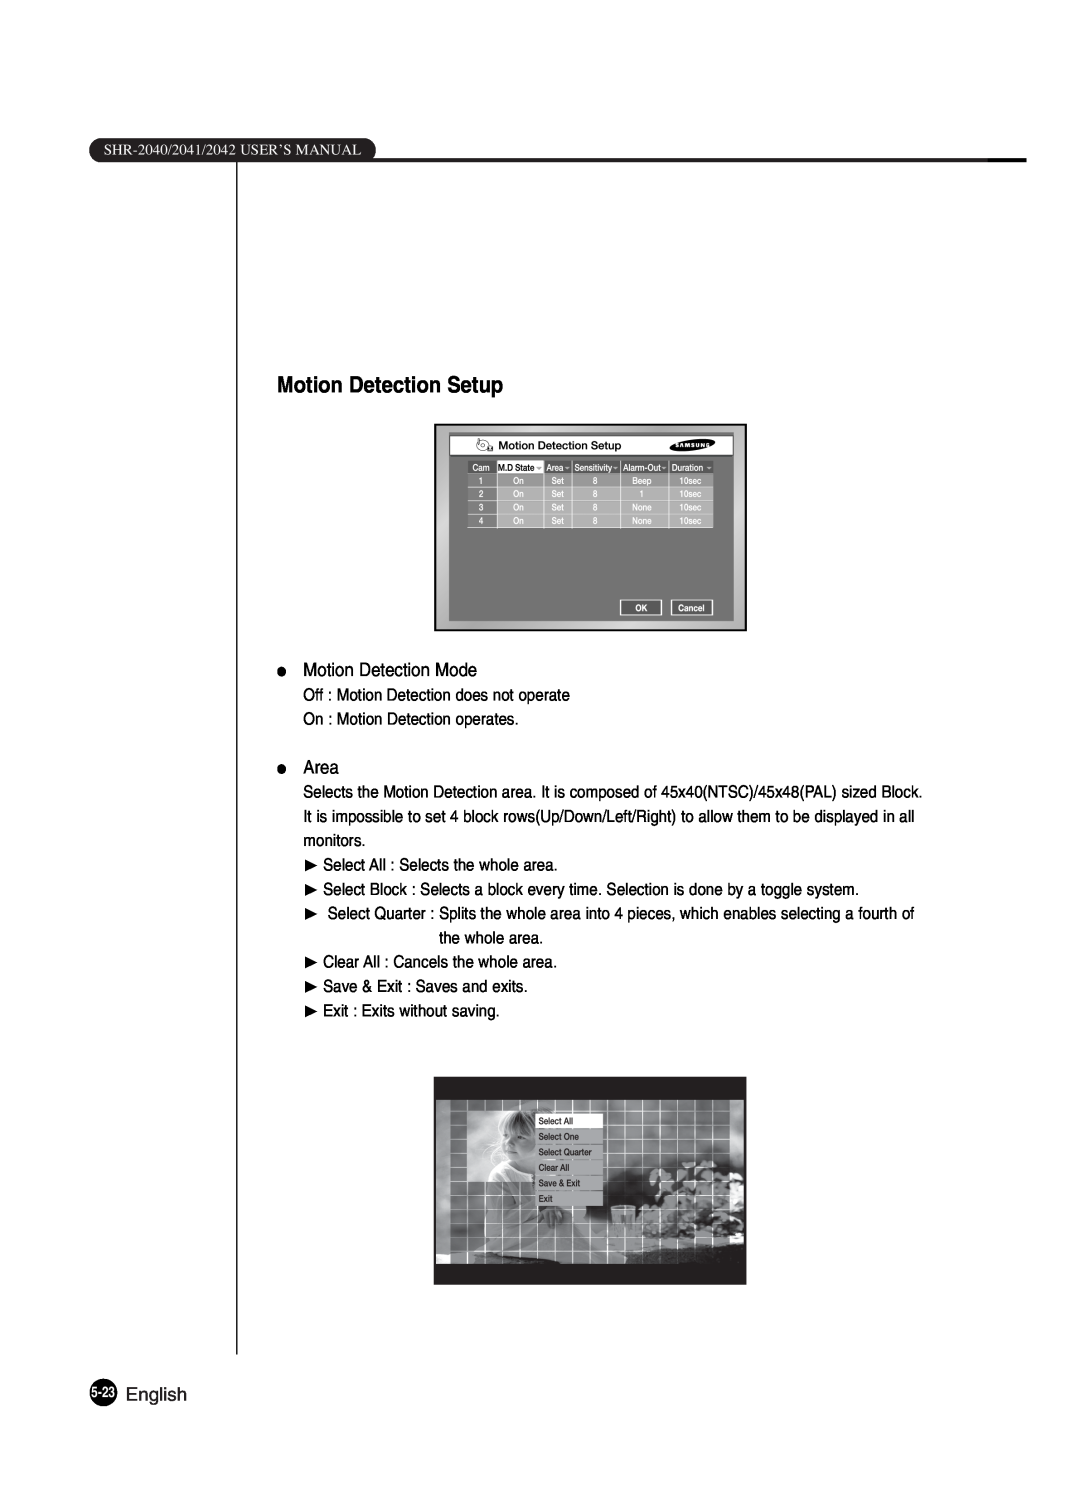 Samsung SHR-2042P250, SHR-2040P250 manual Motion Detection Setup, English 